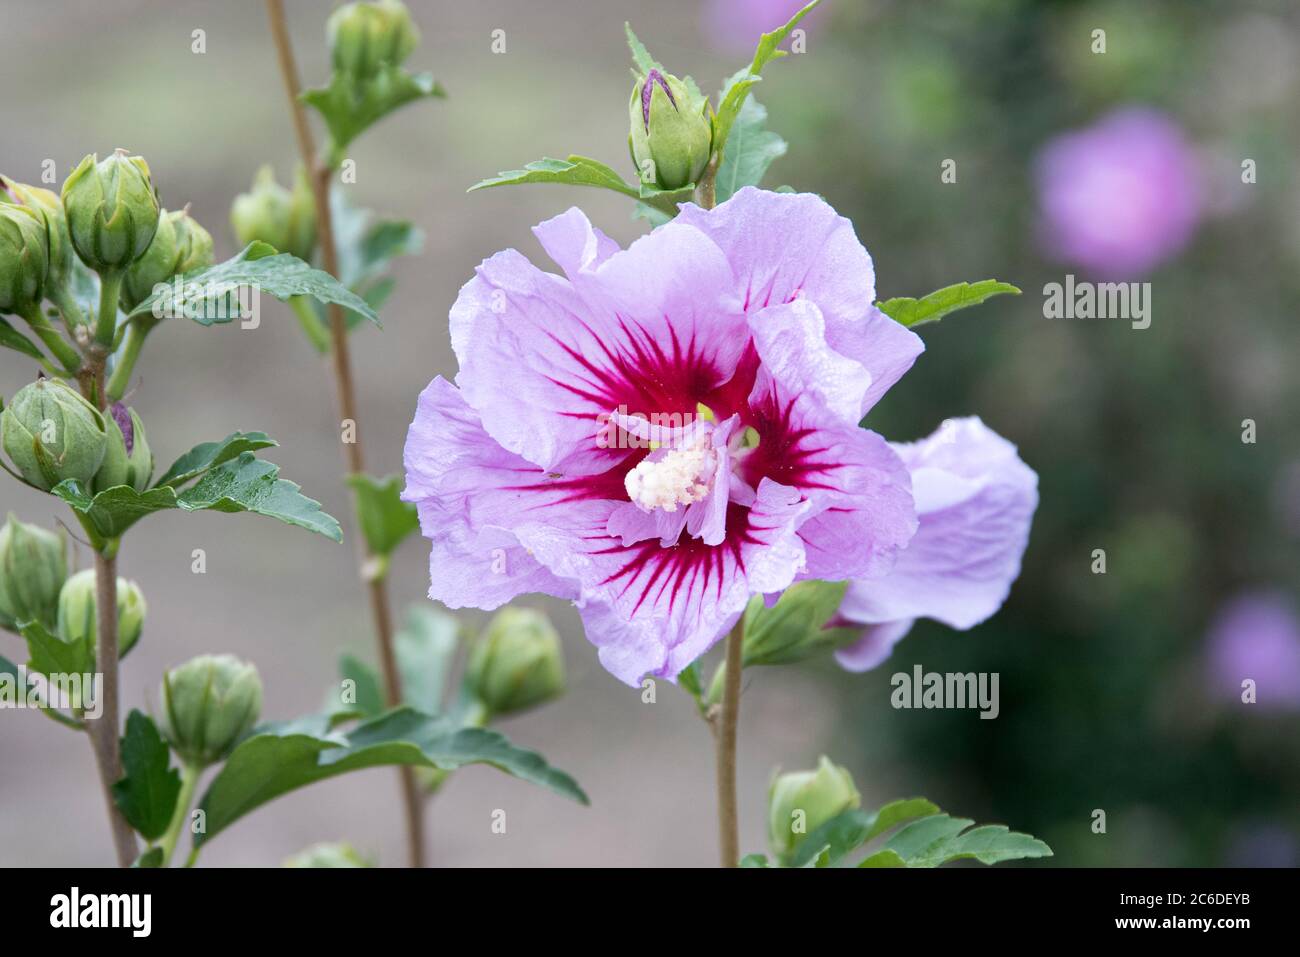 Garten-Eibisch, Hibiscus syriacus Mingravi4, Garden Hibiscus, Hibiscus syriacus Mingravi4 Stock Photo